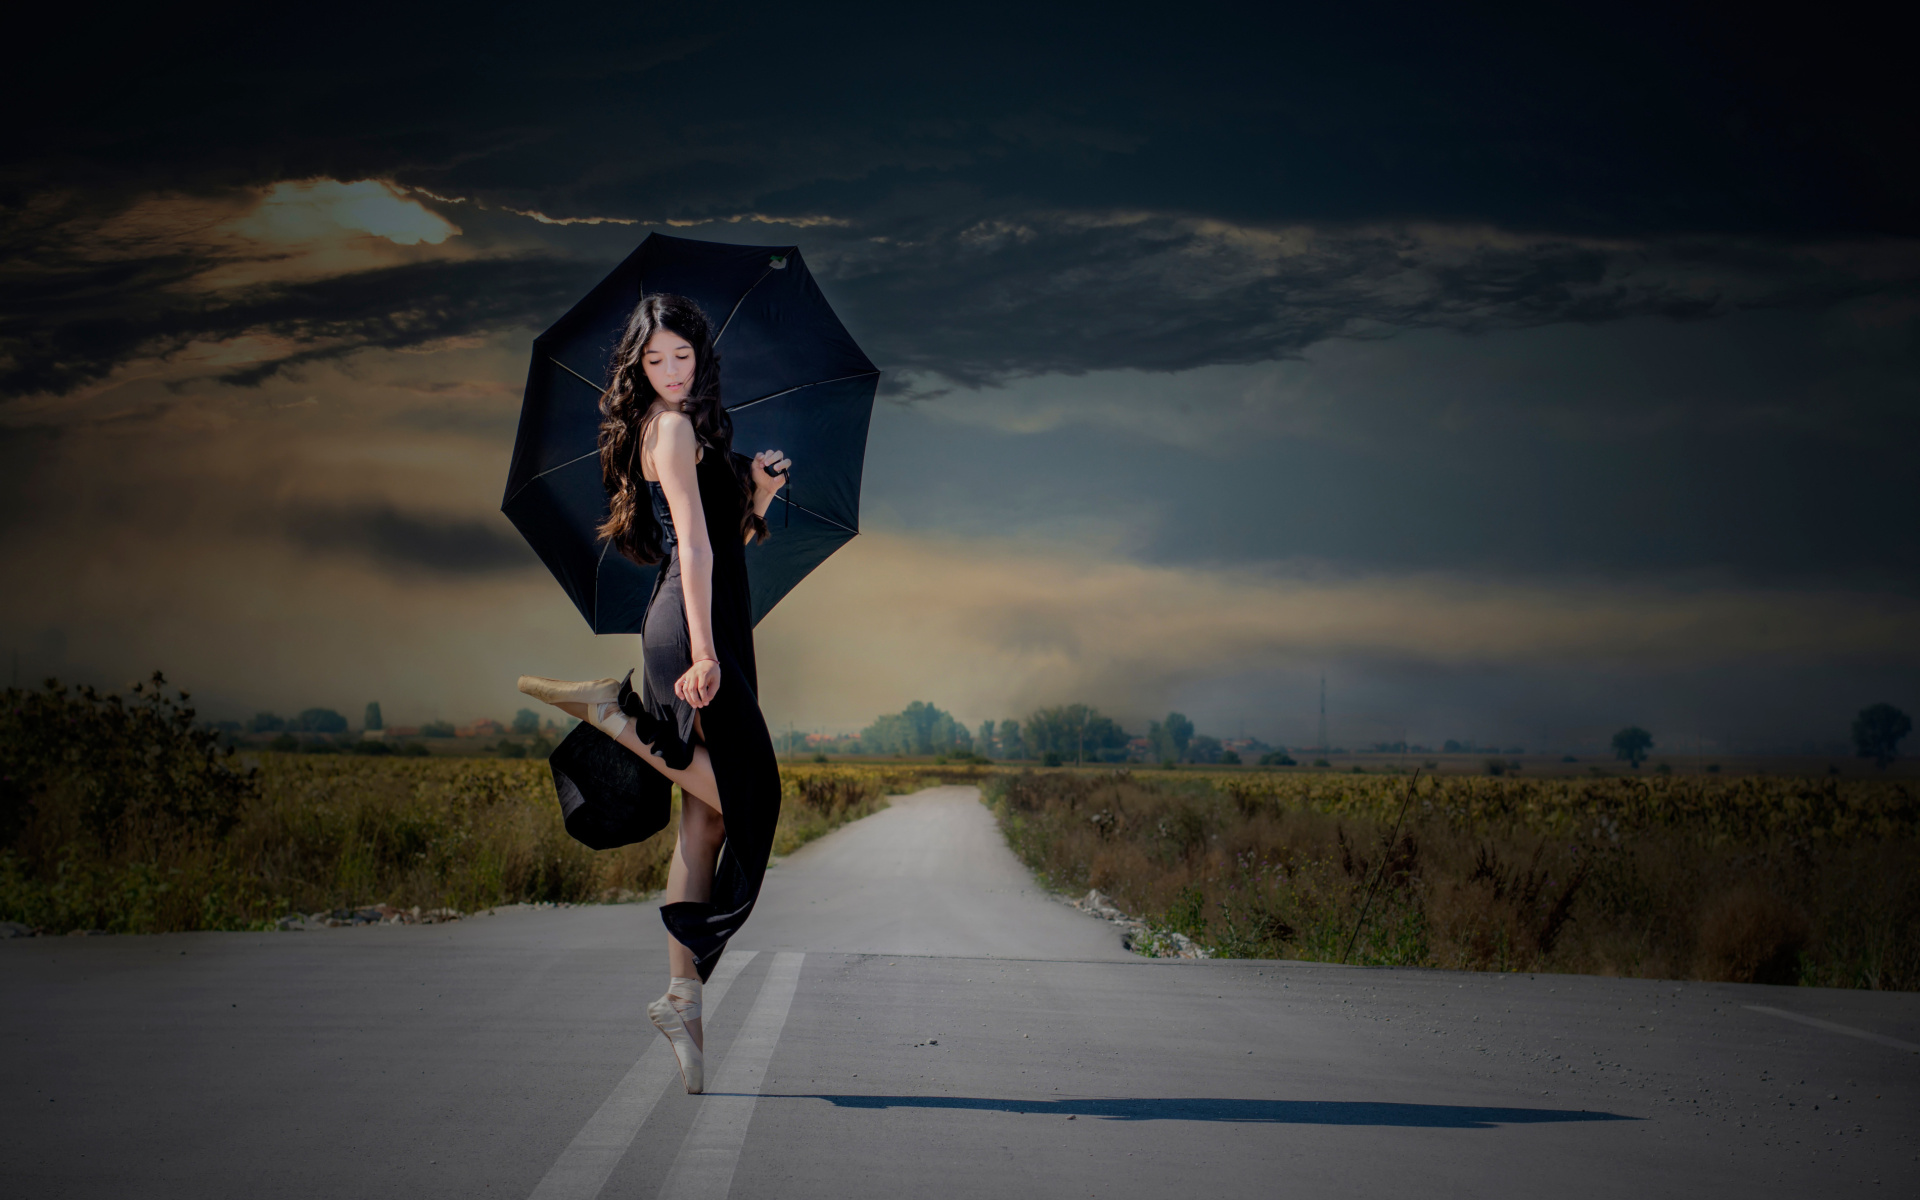 Das Ballerina with black umbrella Wallpaper 1920x1200